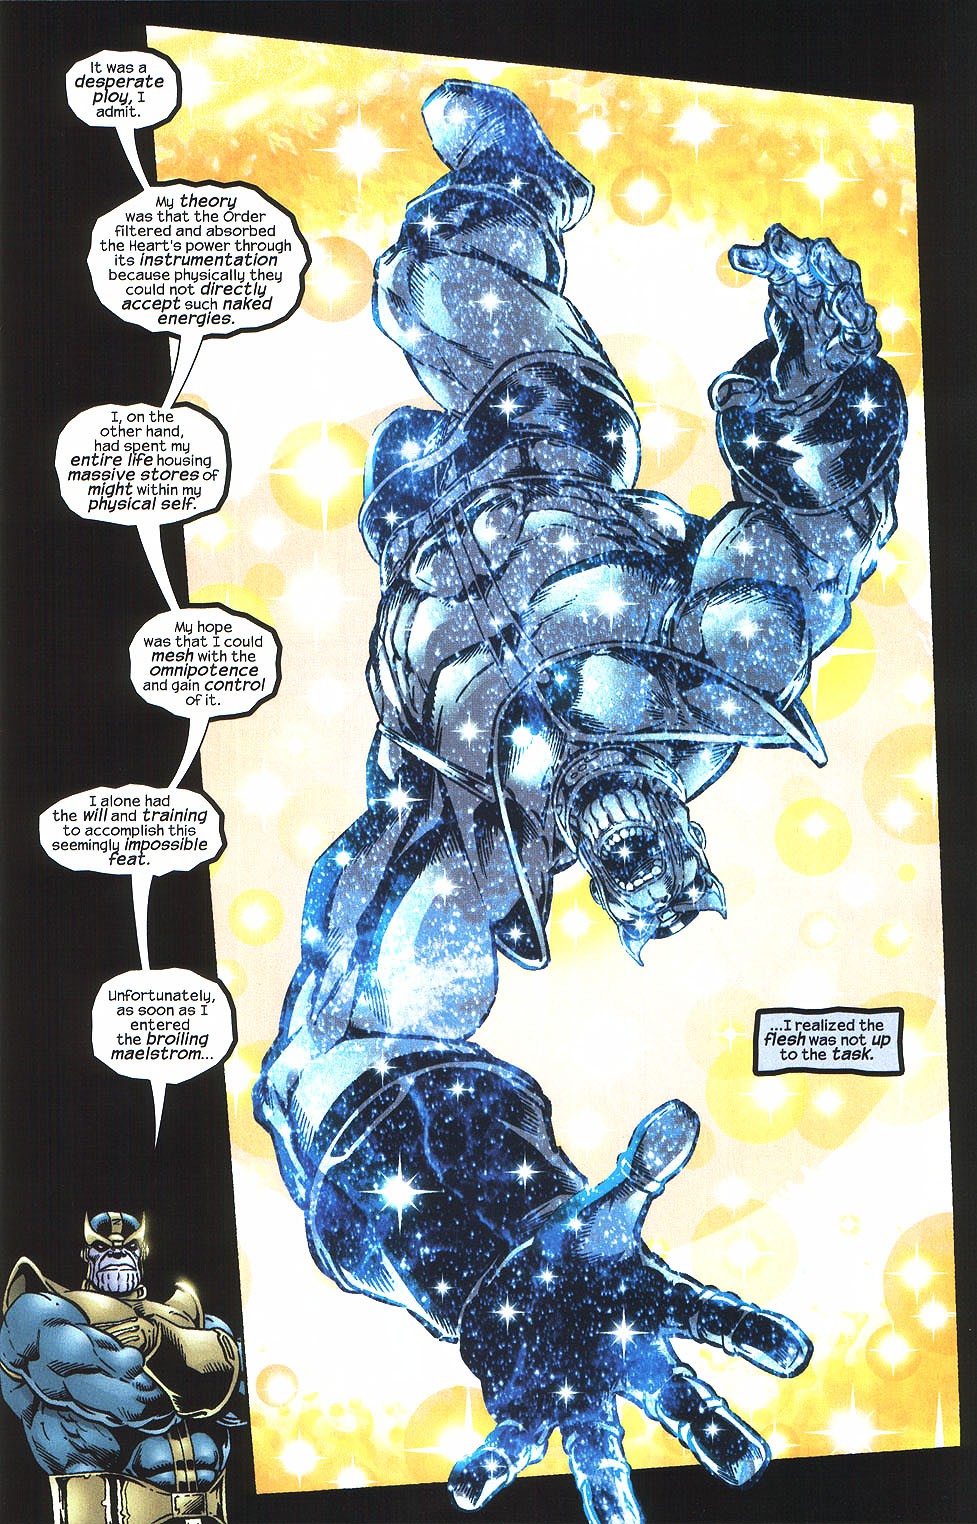 Heart of the Universe, bảo vật vũ trụ giúp Thanos trở thành Chúa Trời, sở hữu quyền năng vượt xa Găng Tay Vô Cực - Ảnh 6.